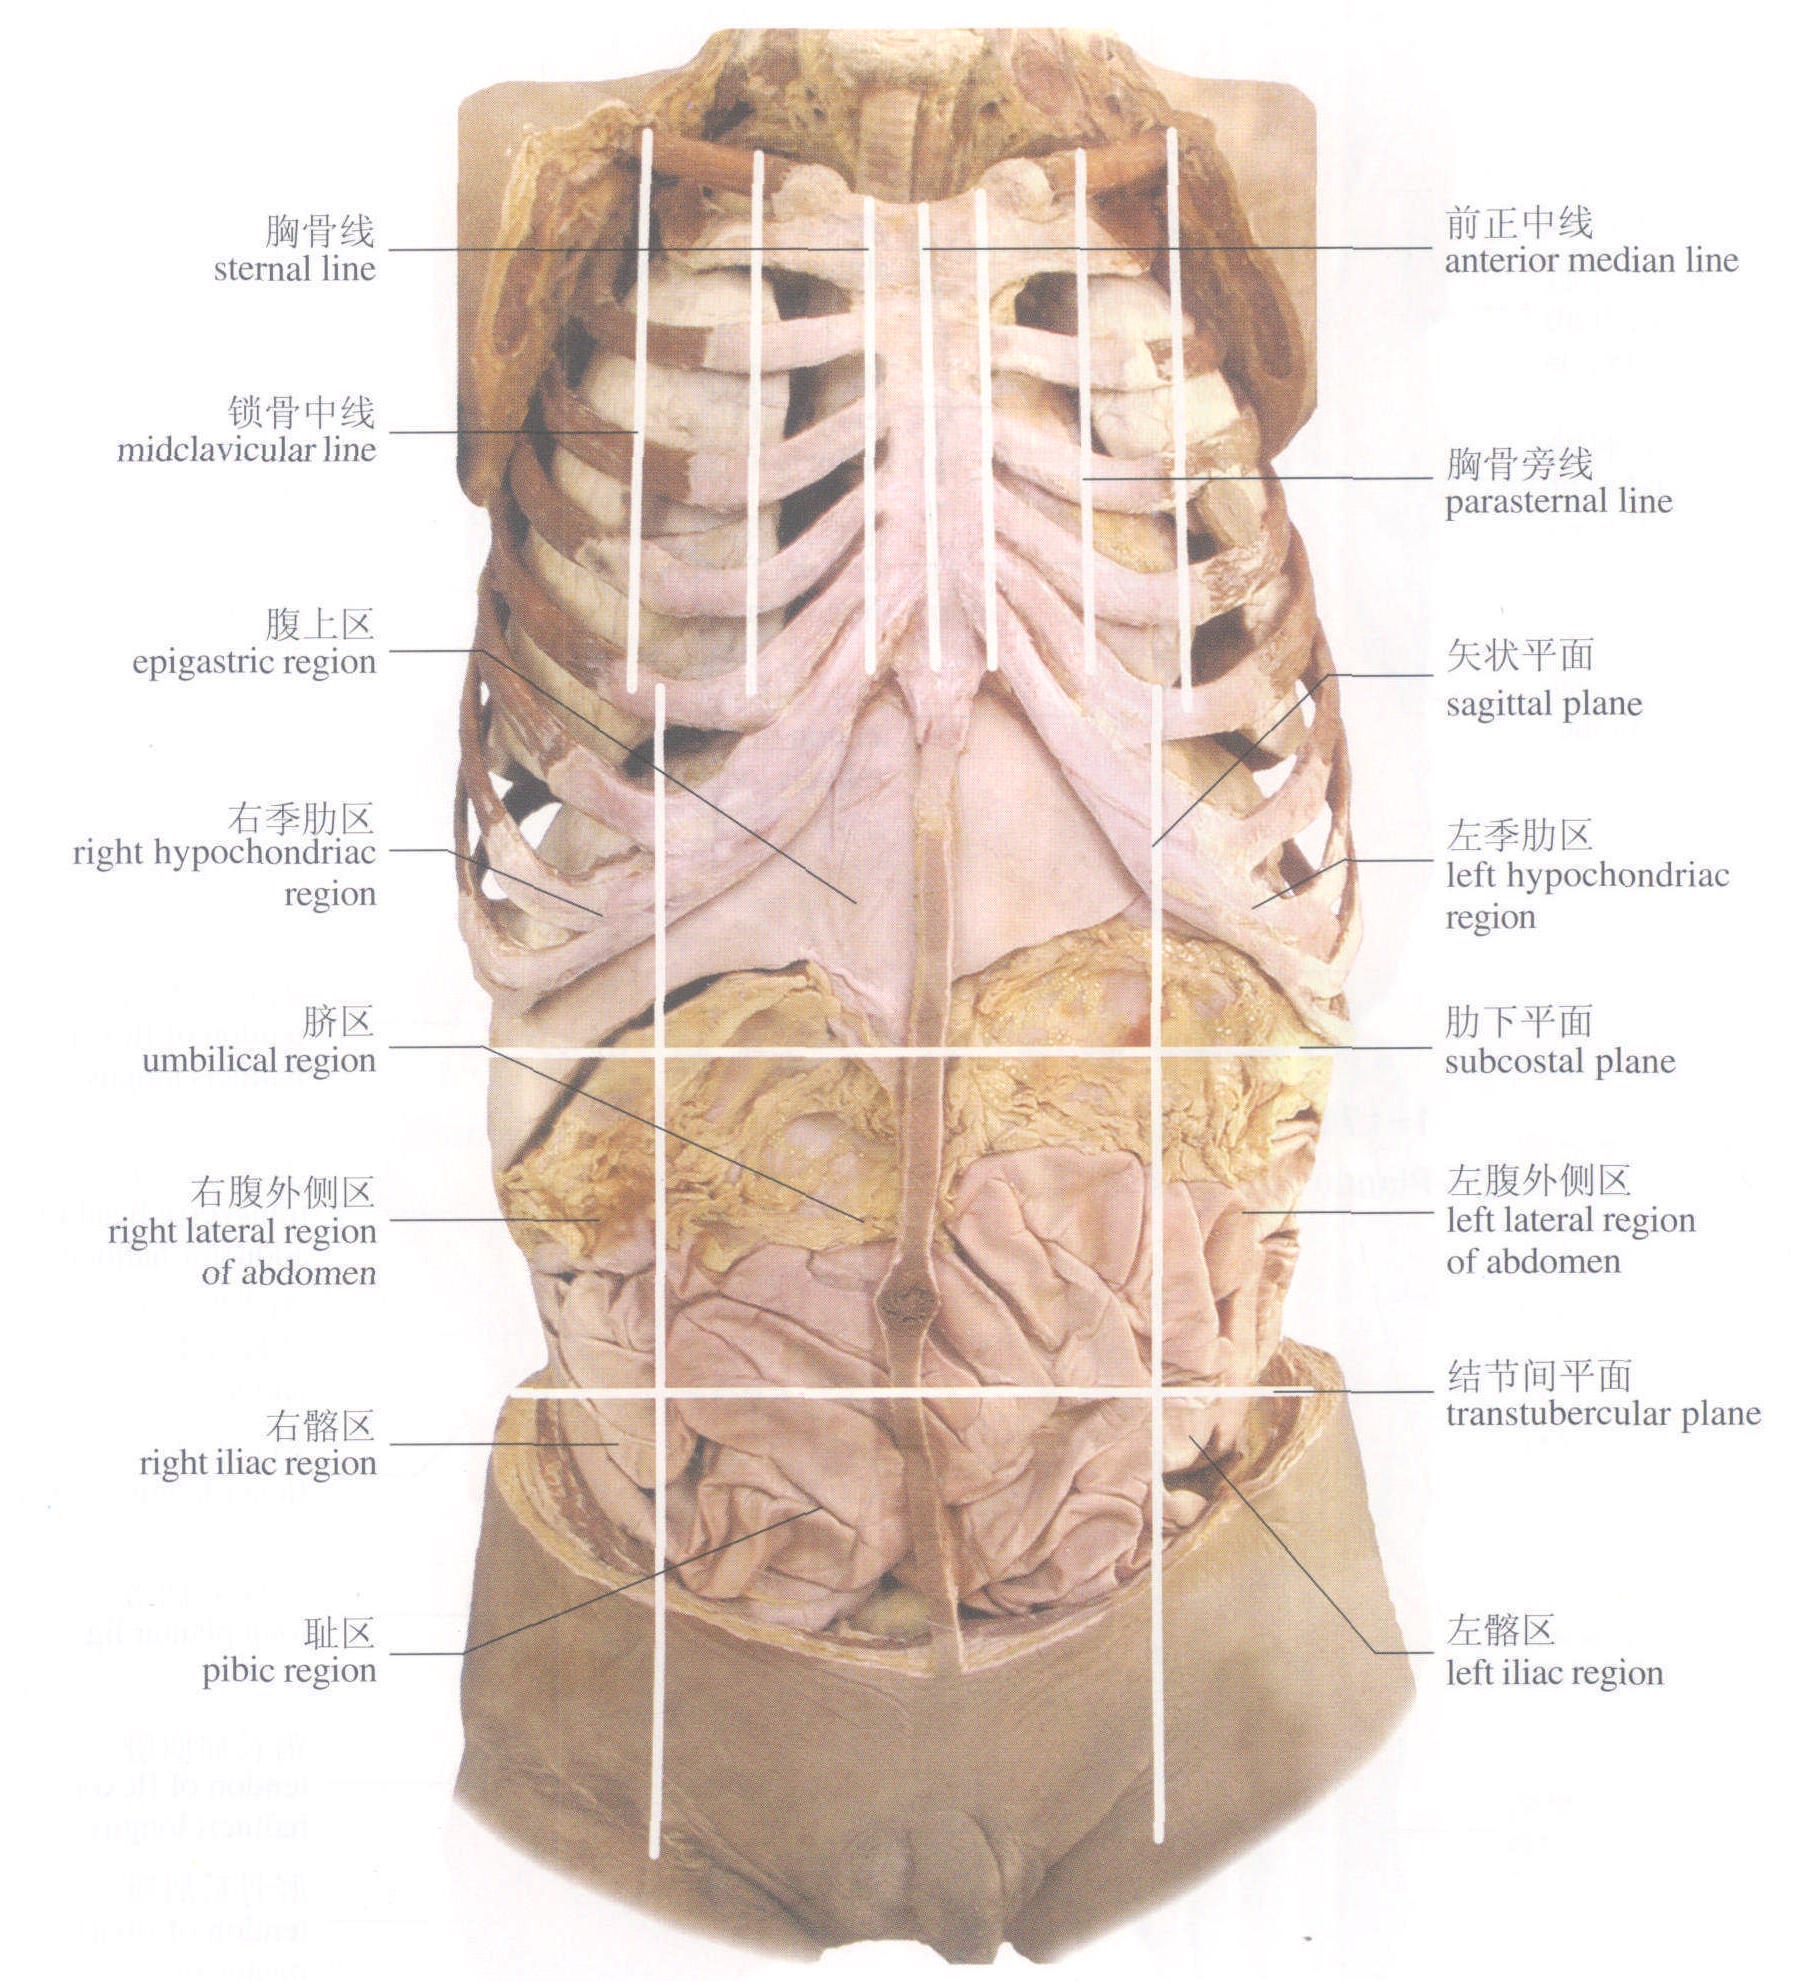 21胸腹部的标志线及分区